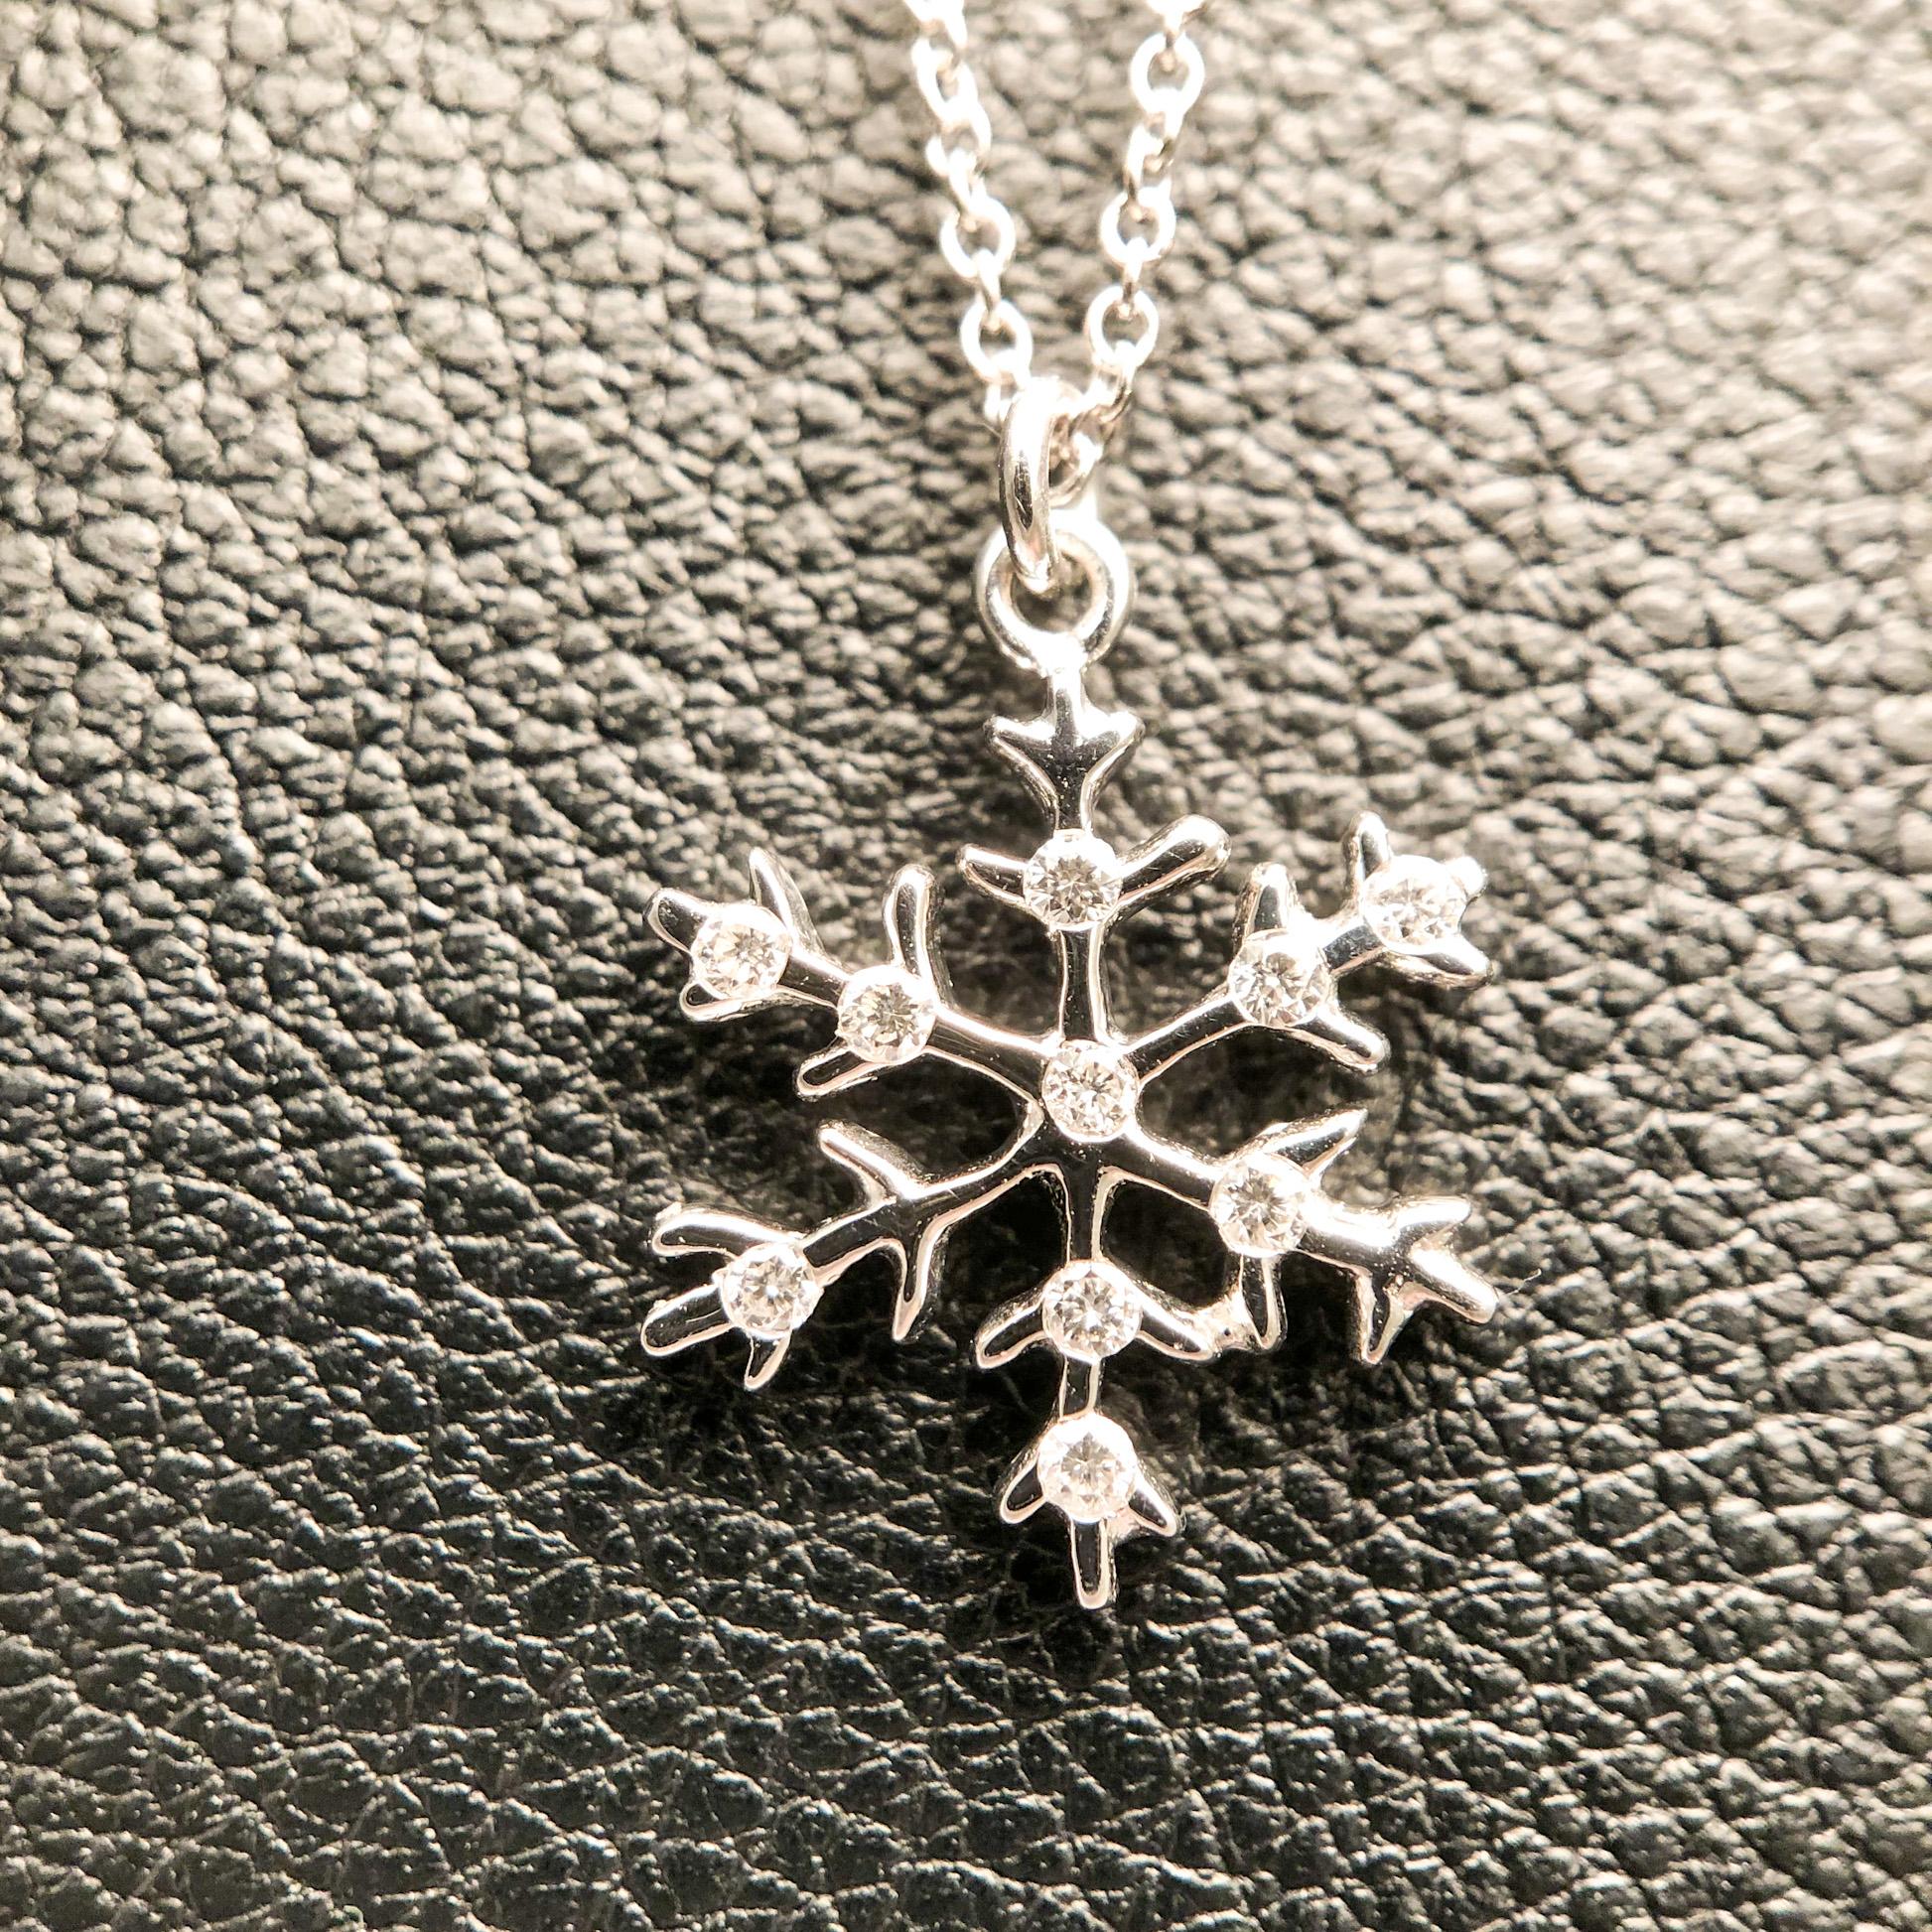 Pavage : Diamants blancs 0,07ct. (10 pièces) 
Matériau : Or blanc 750
Longueur du collier 42 cm

Le parfait petit cadeau de Noël pour vos proches est ce pendentif 